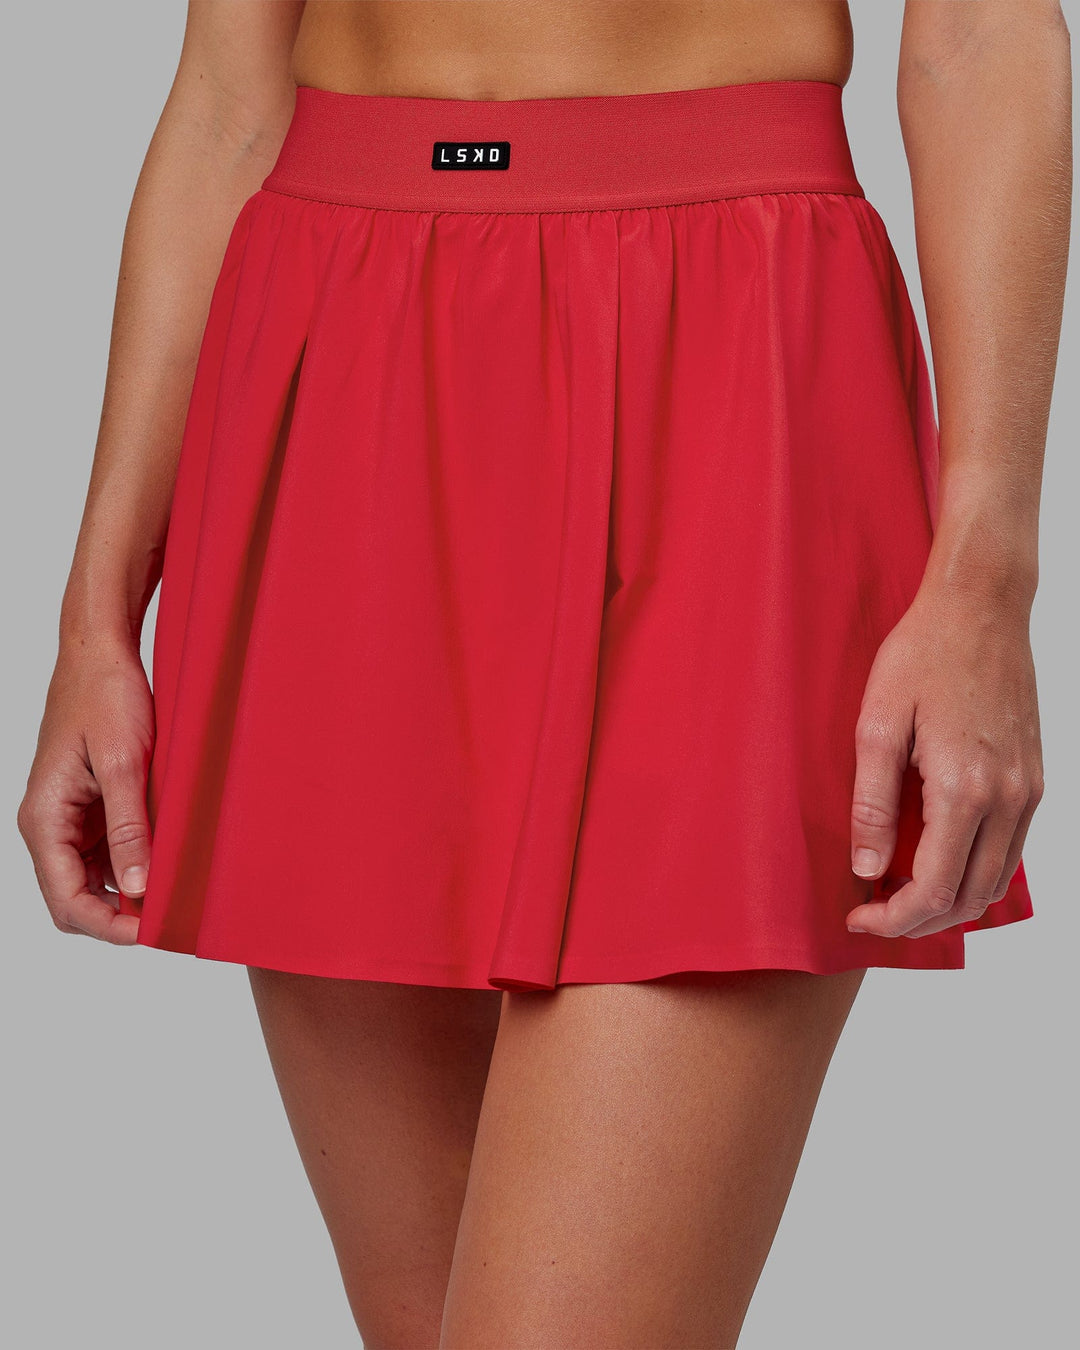 Woman wearing Ace Skirt - Scarlet